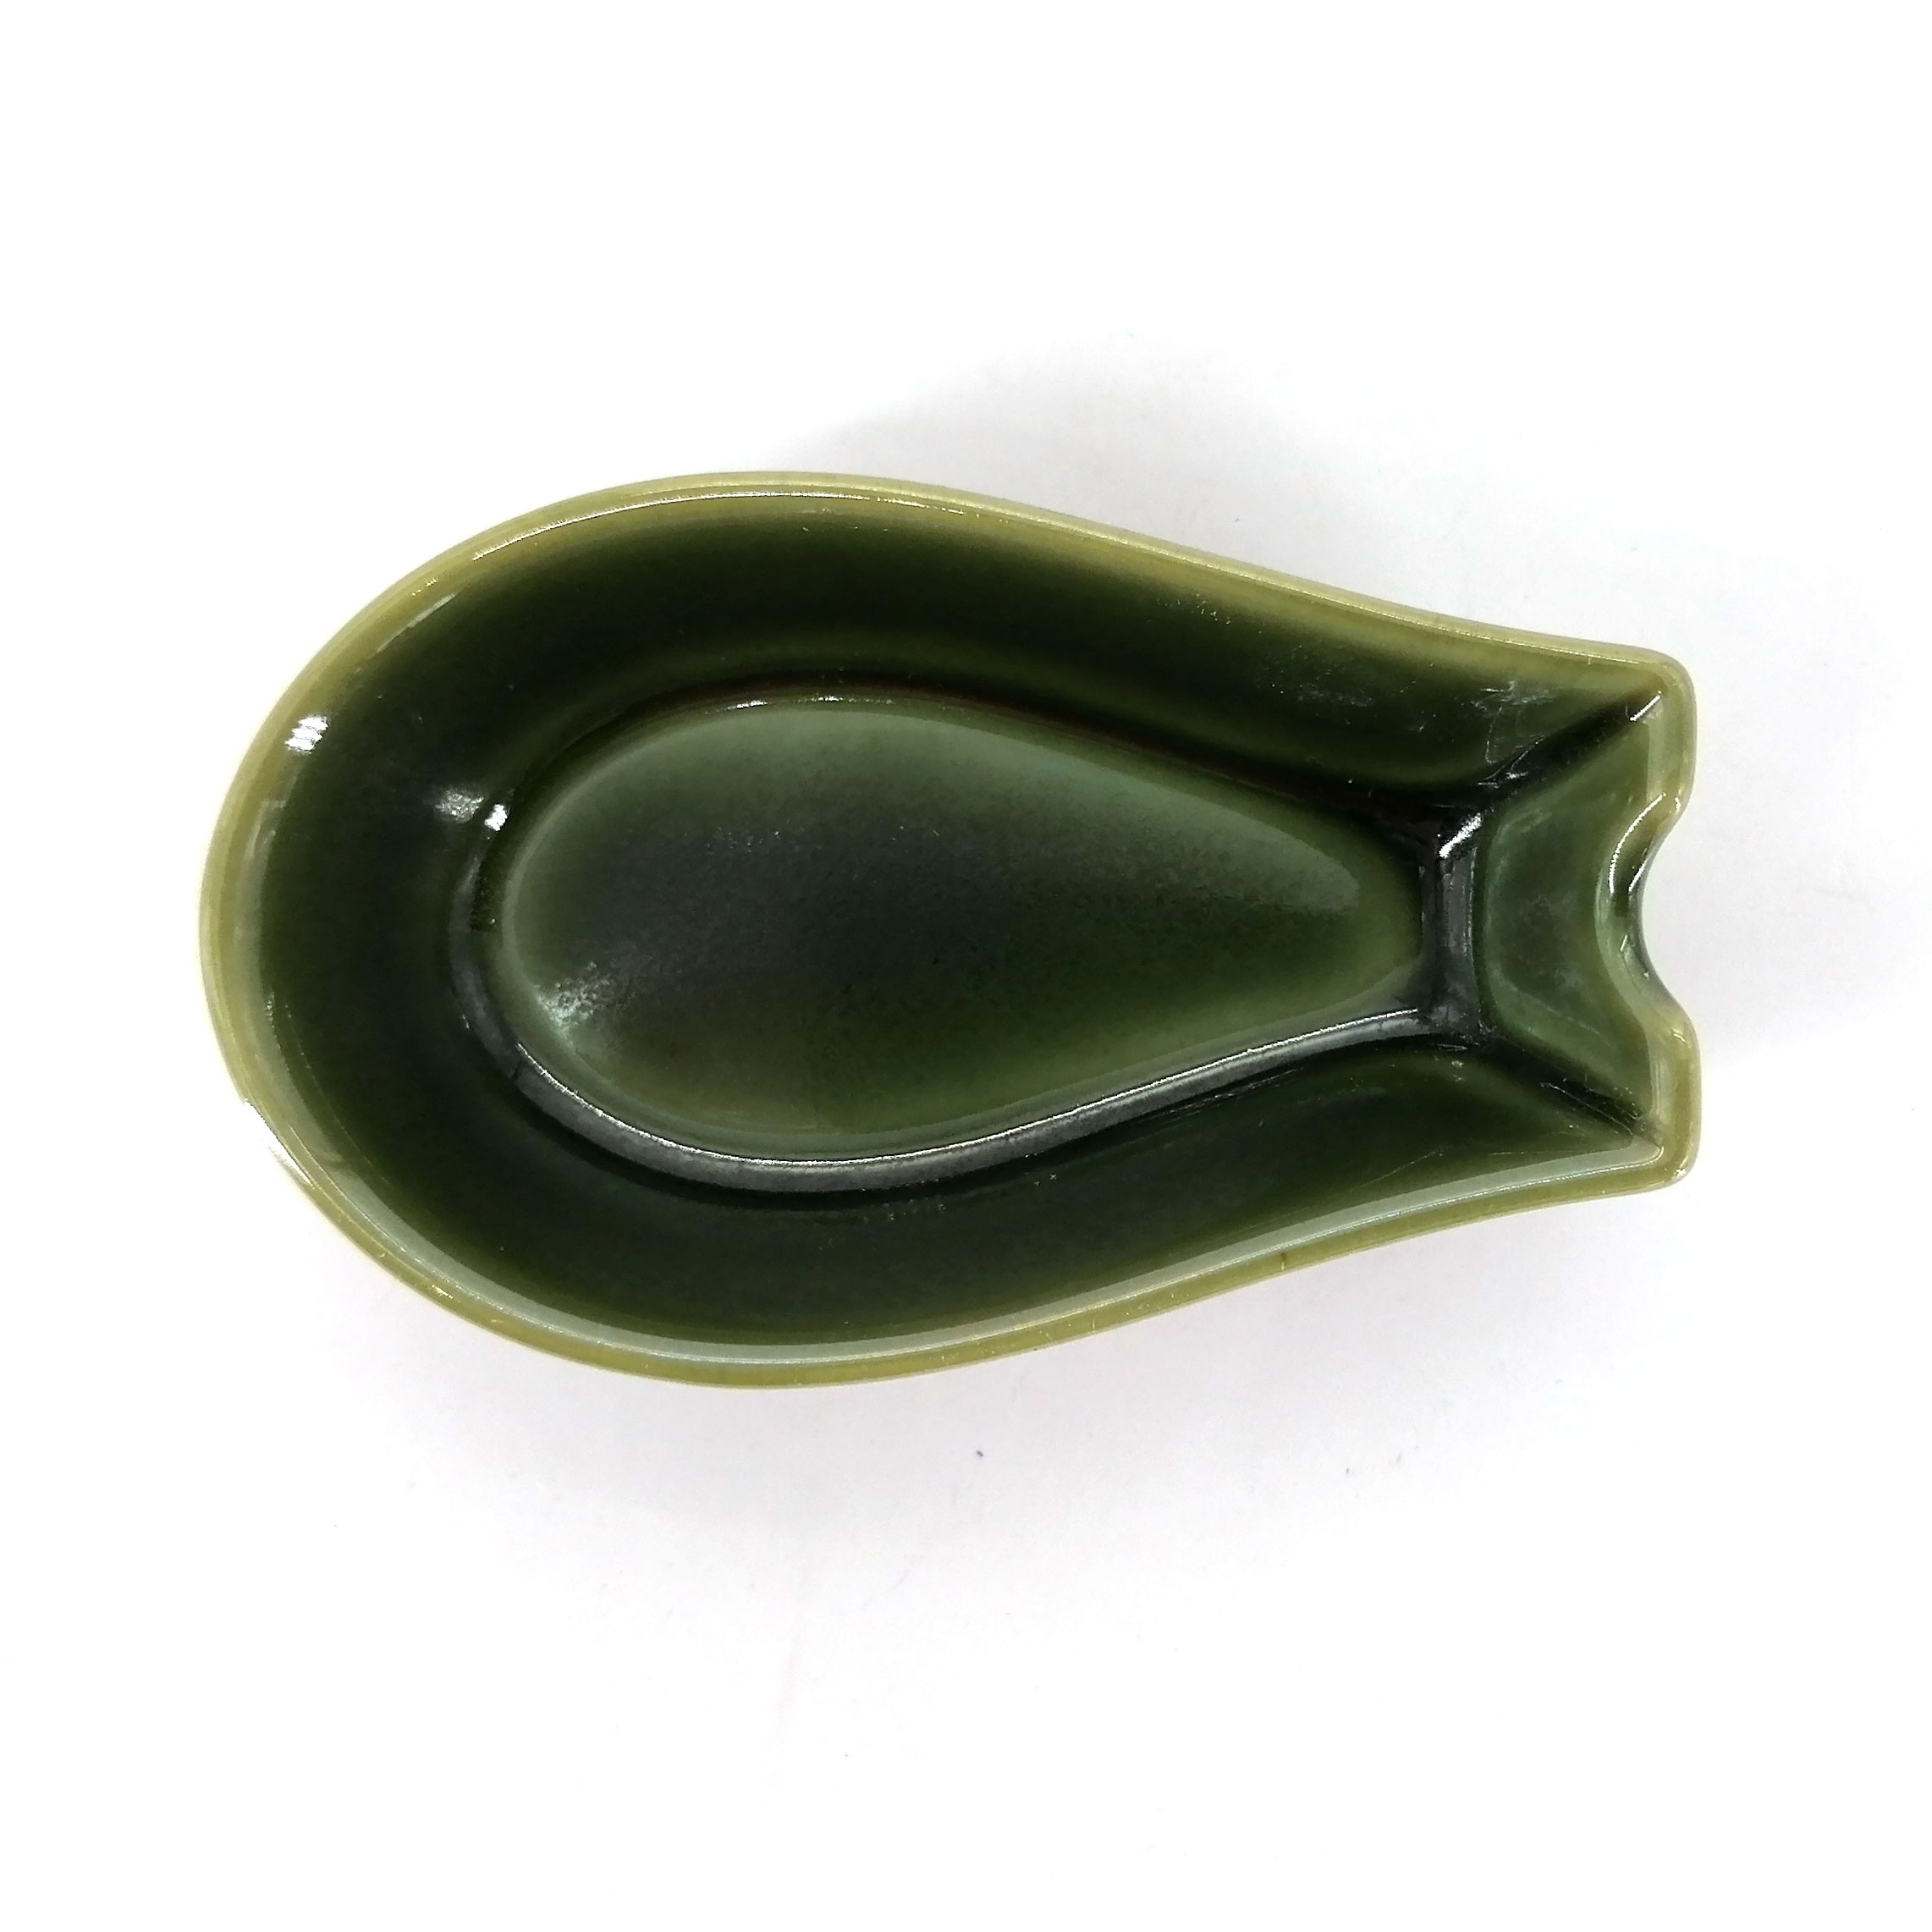 Alter Repose-cuillère en silicone (vert), porte-cuillère de